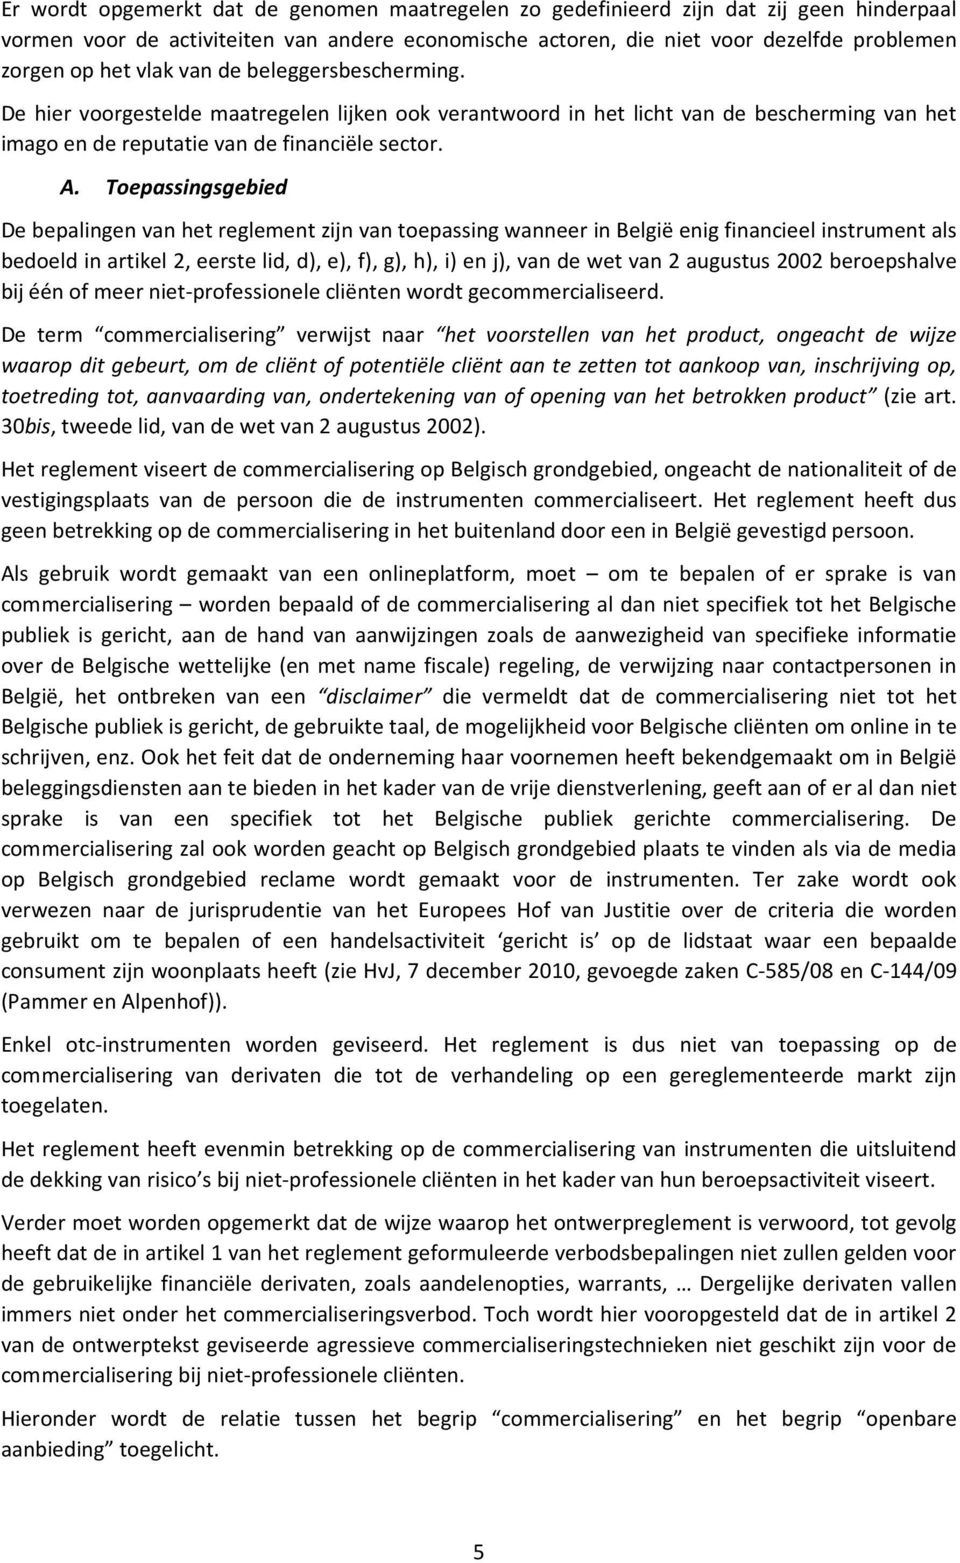 Toepassingsgebied De bepalingen van het reglement zijn van toepassing wanneer in België enig financieel instrument als bedoeld in artikel 2, eerste lid, d), e), f), g), h), i) en j), van de wet van 2